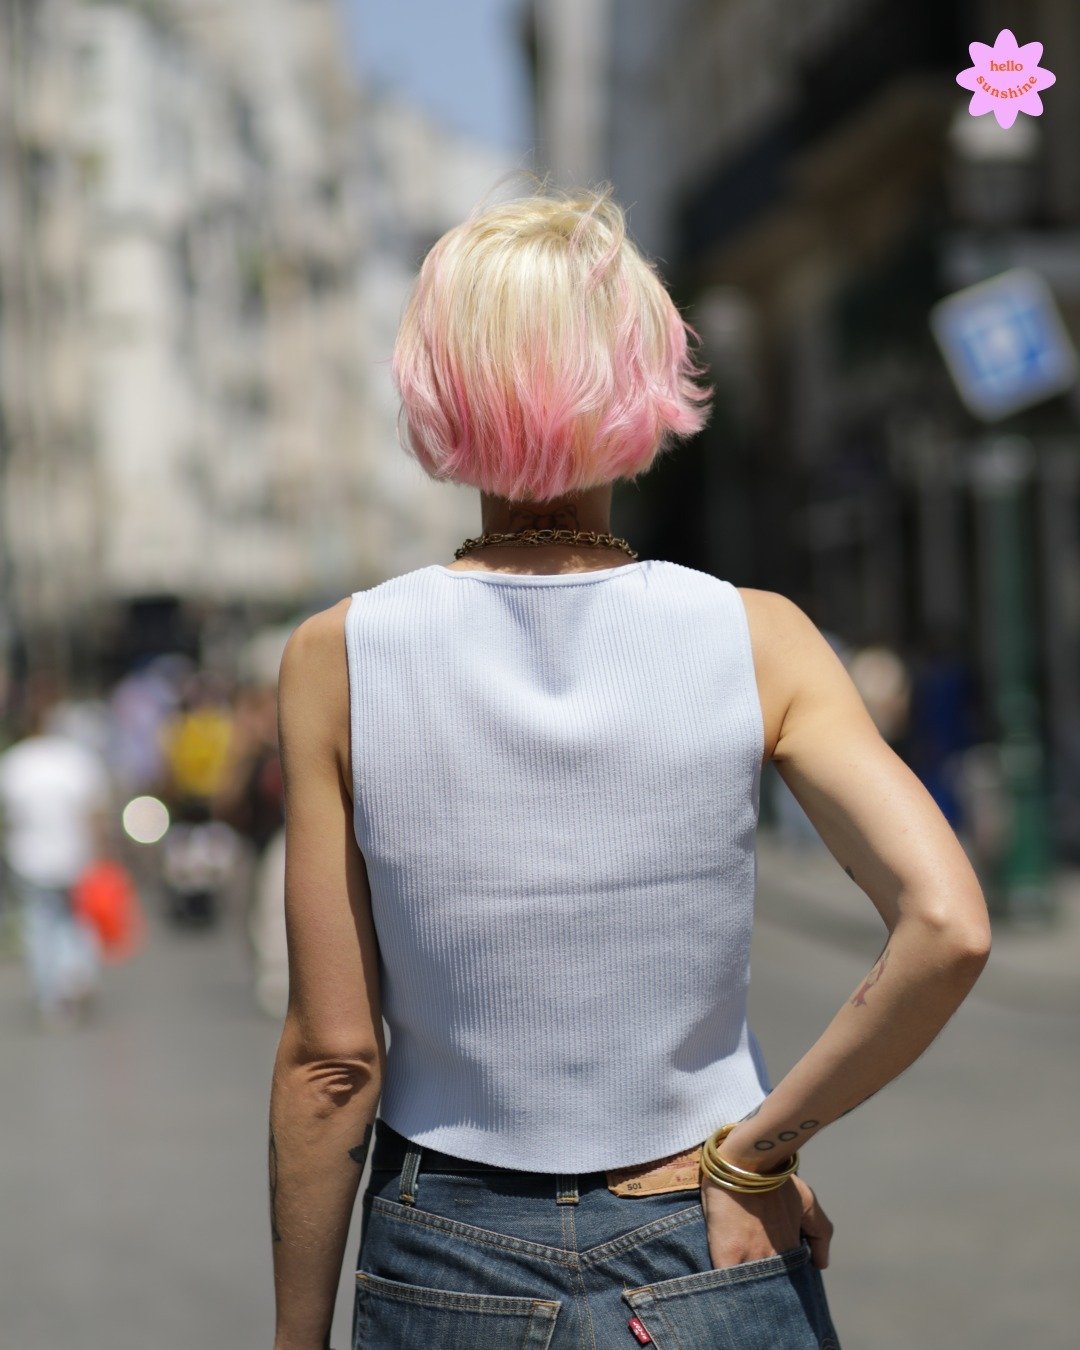 Wow ce blond polaire avec cette touche de rose sur les pointes. 😍
Fais-nous confiance et laisse notre team t'aider &agrave; trouver le perfect match avec ton style. #blondpolar #pinkhair #paris